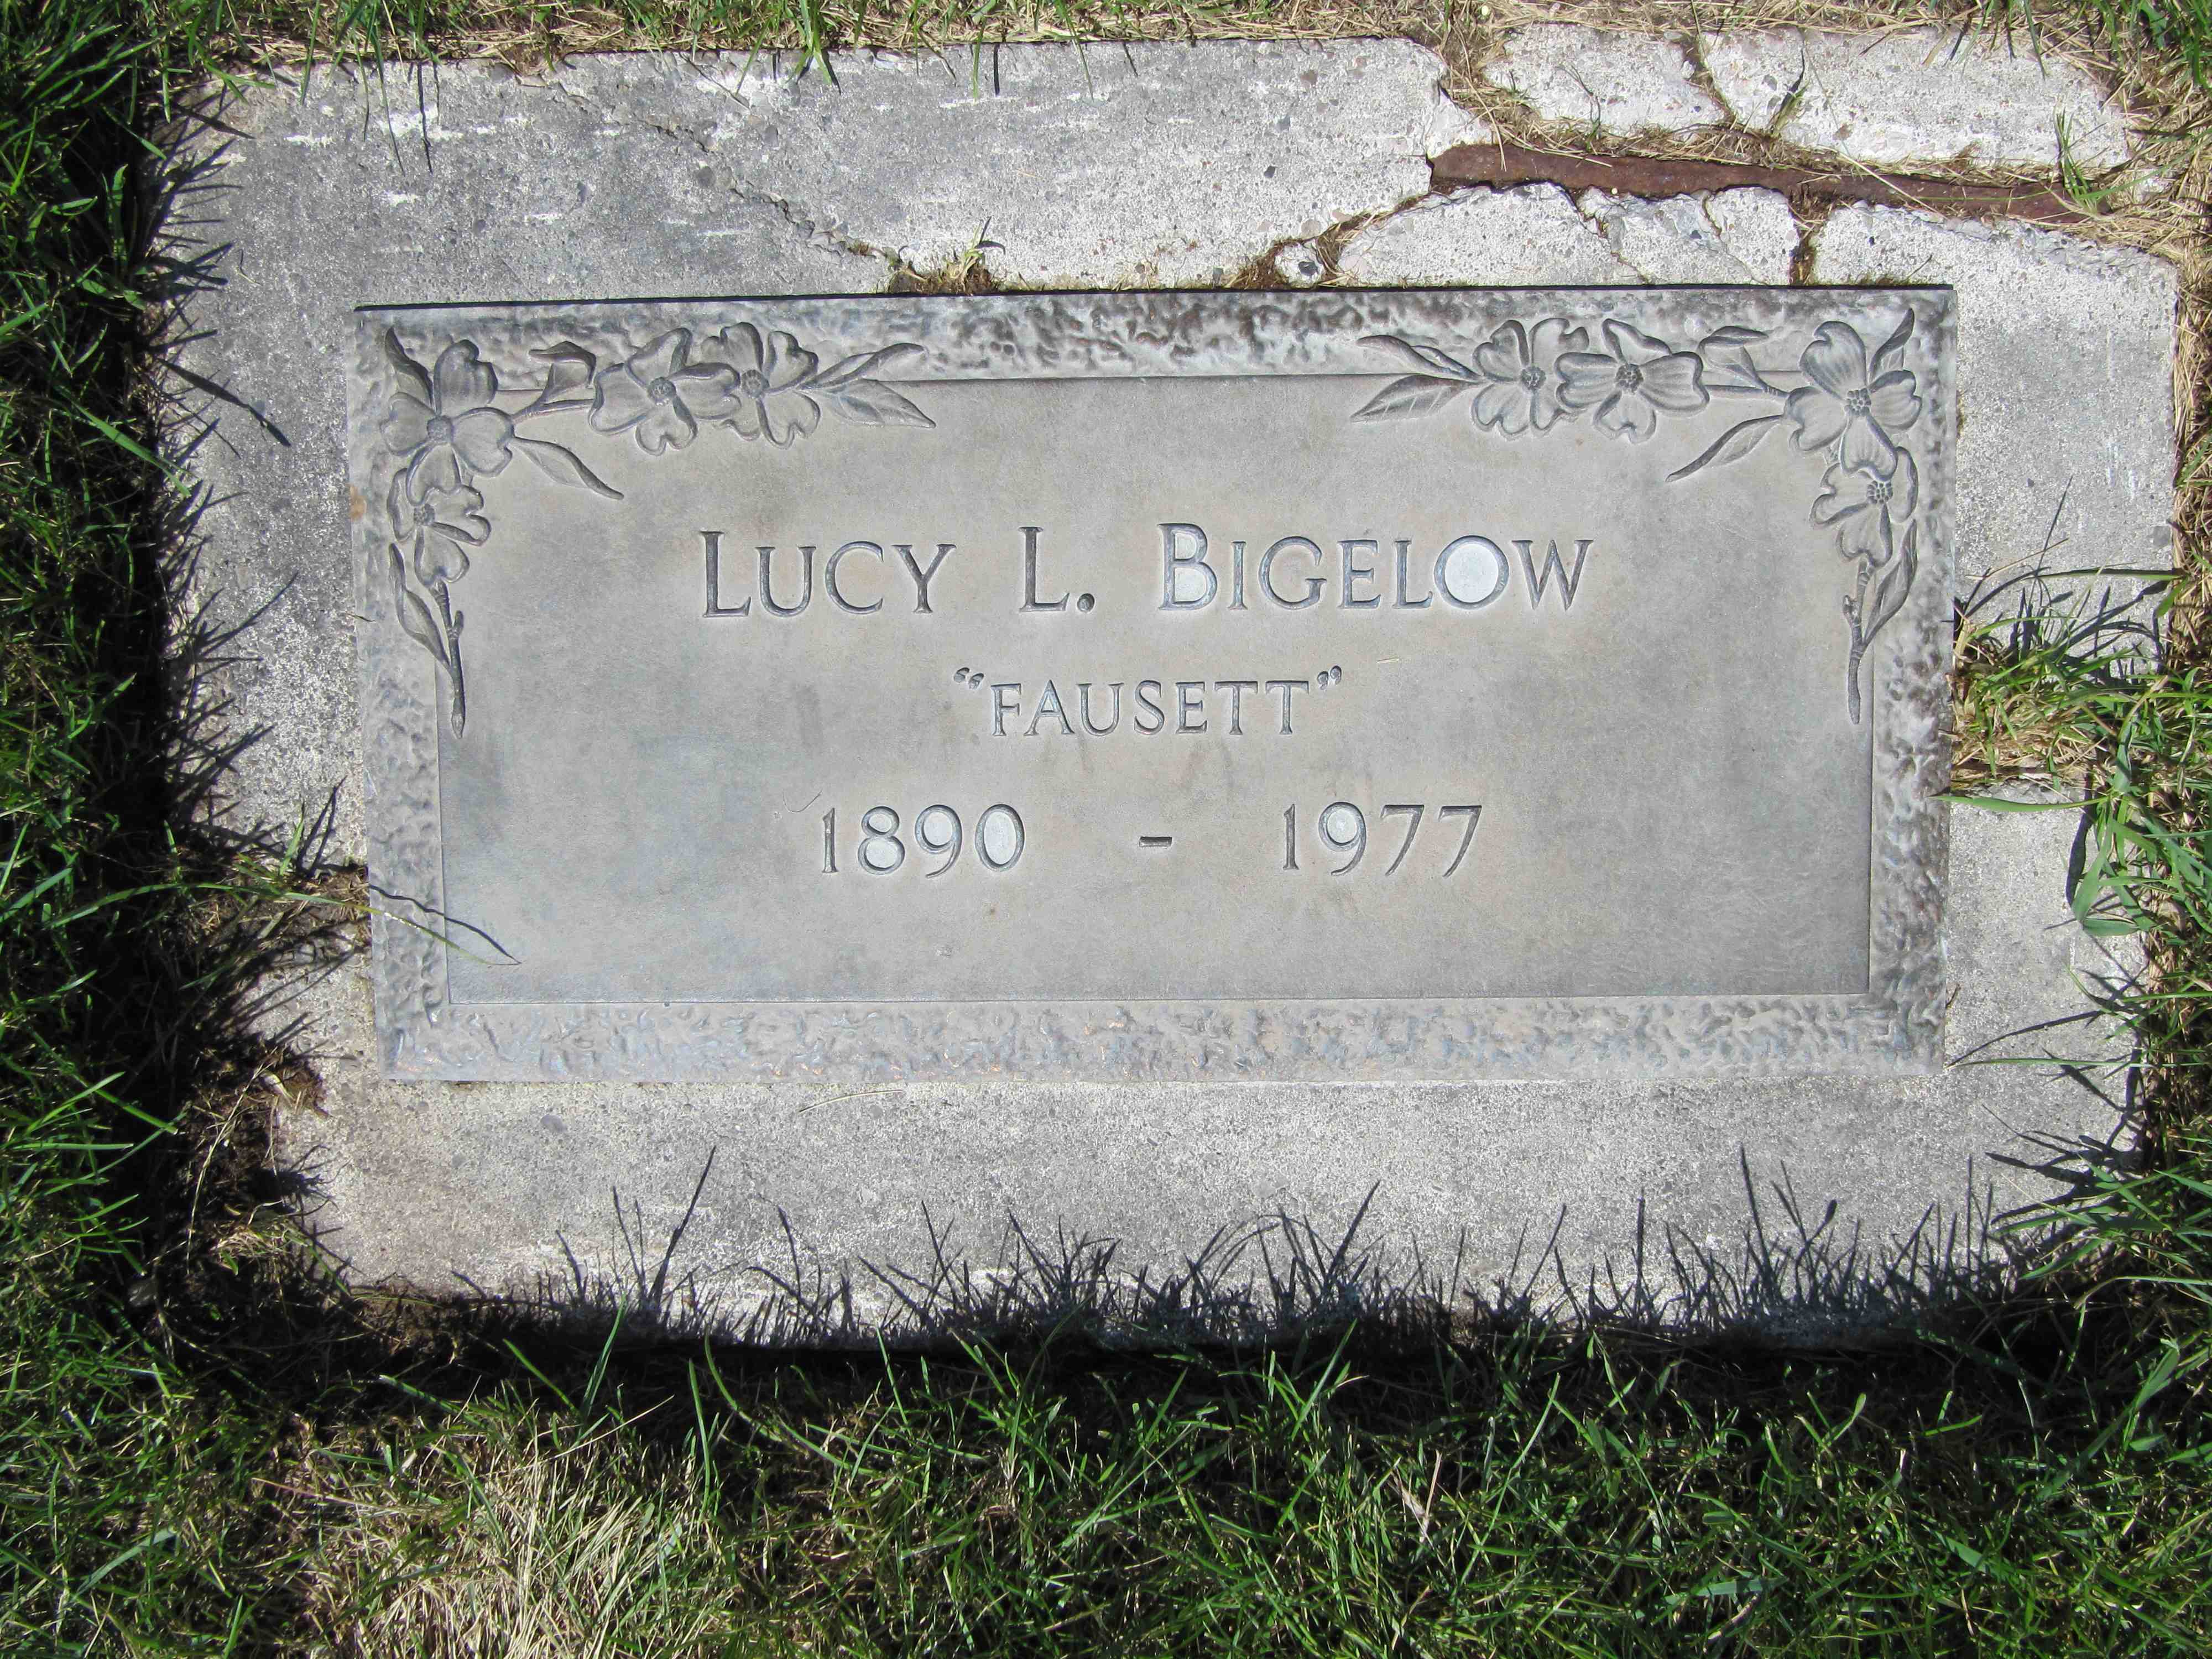 Lucy L "Fausett" Bigelow